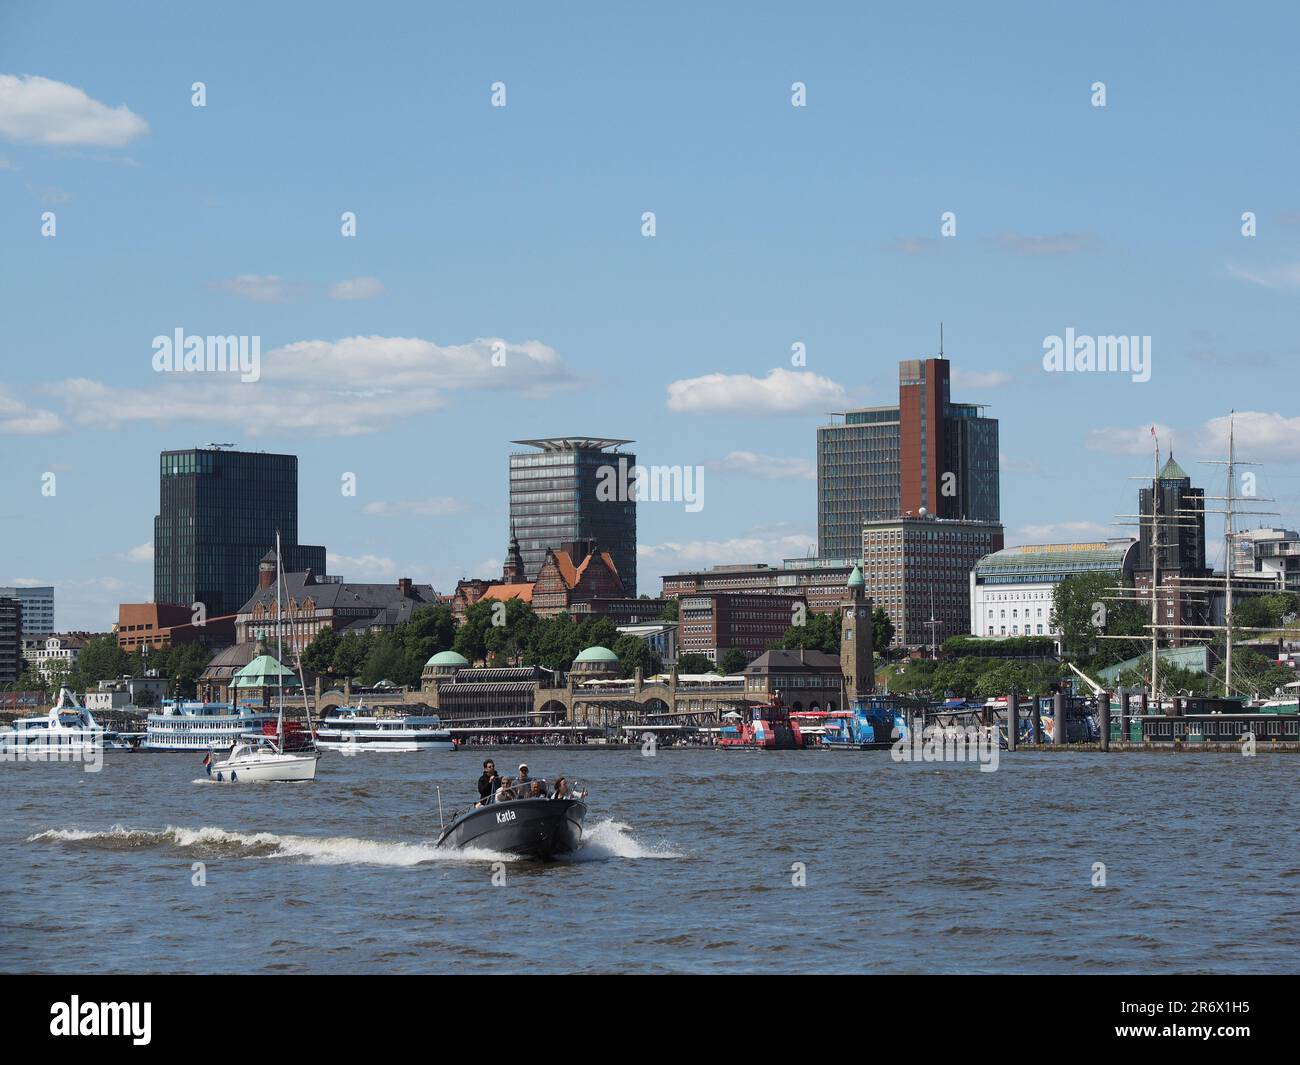 Die Stadt Hamburg vom Wasser der Elbe aus gesehen, mit verschiedenen kleinen Booten und Menschen, die sich über das sonnige Wetter freuen. Stockfoto